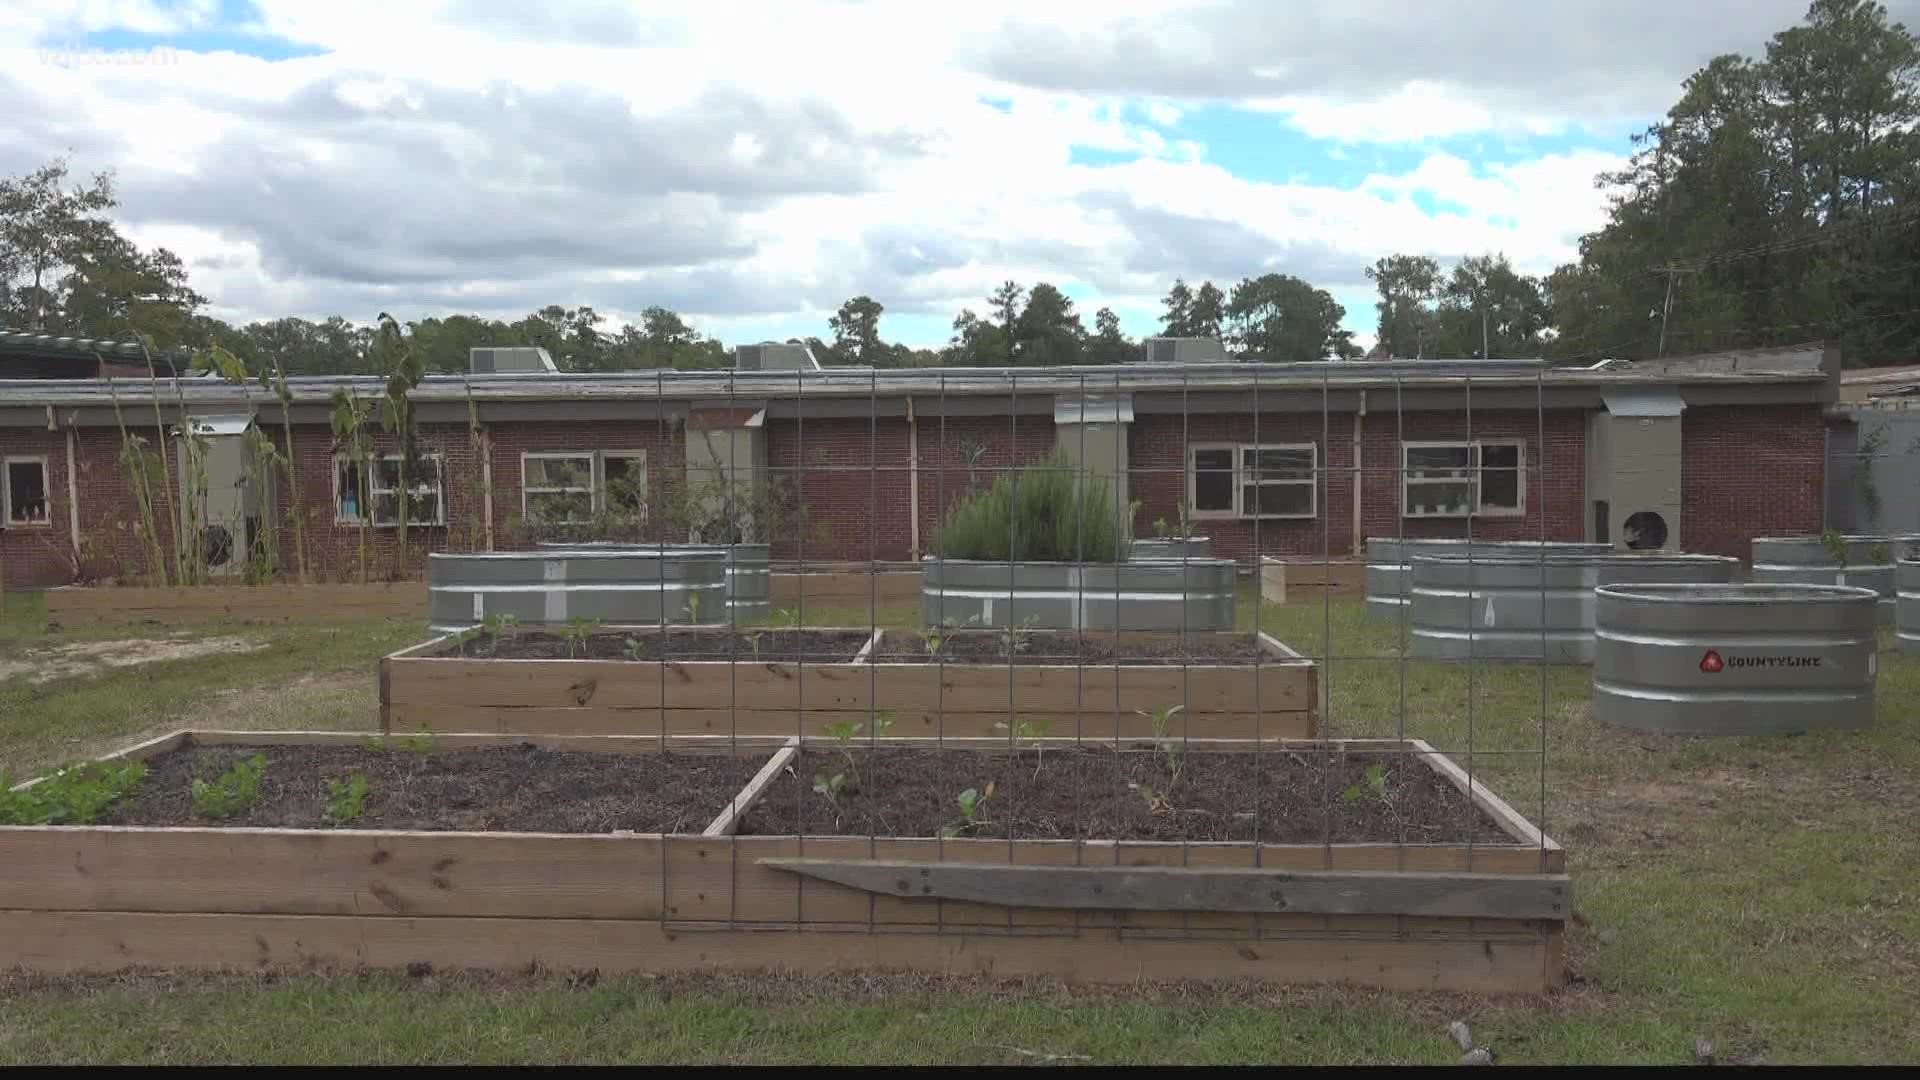 Satchel Ford Elementary school's garden is getting bigger,